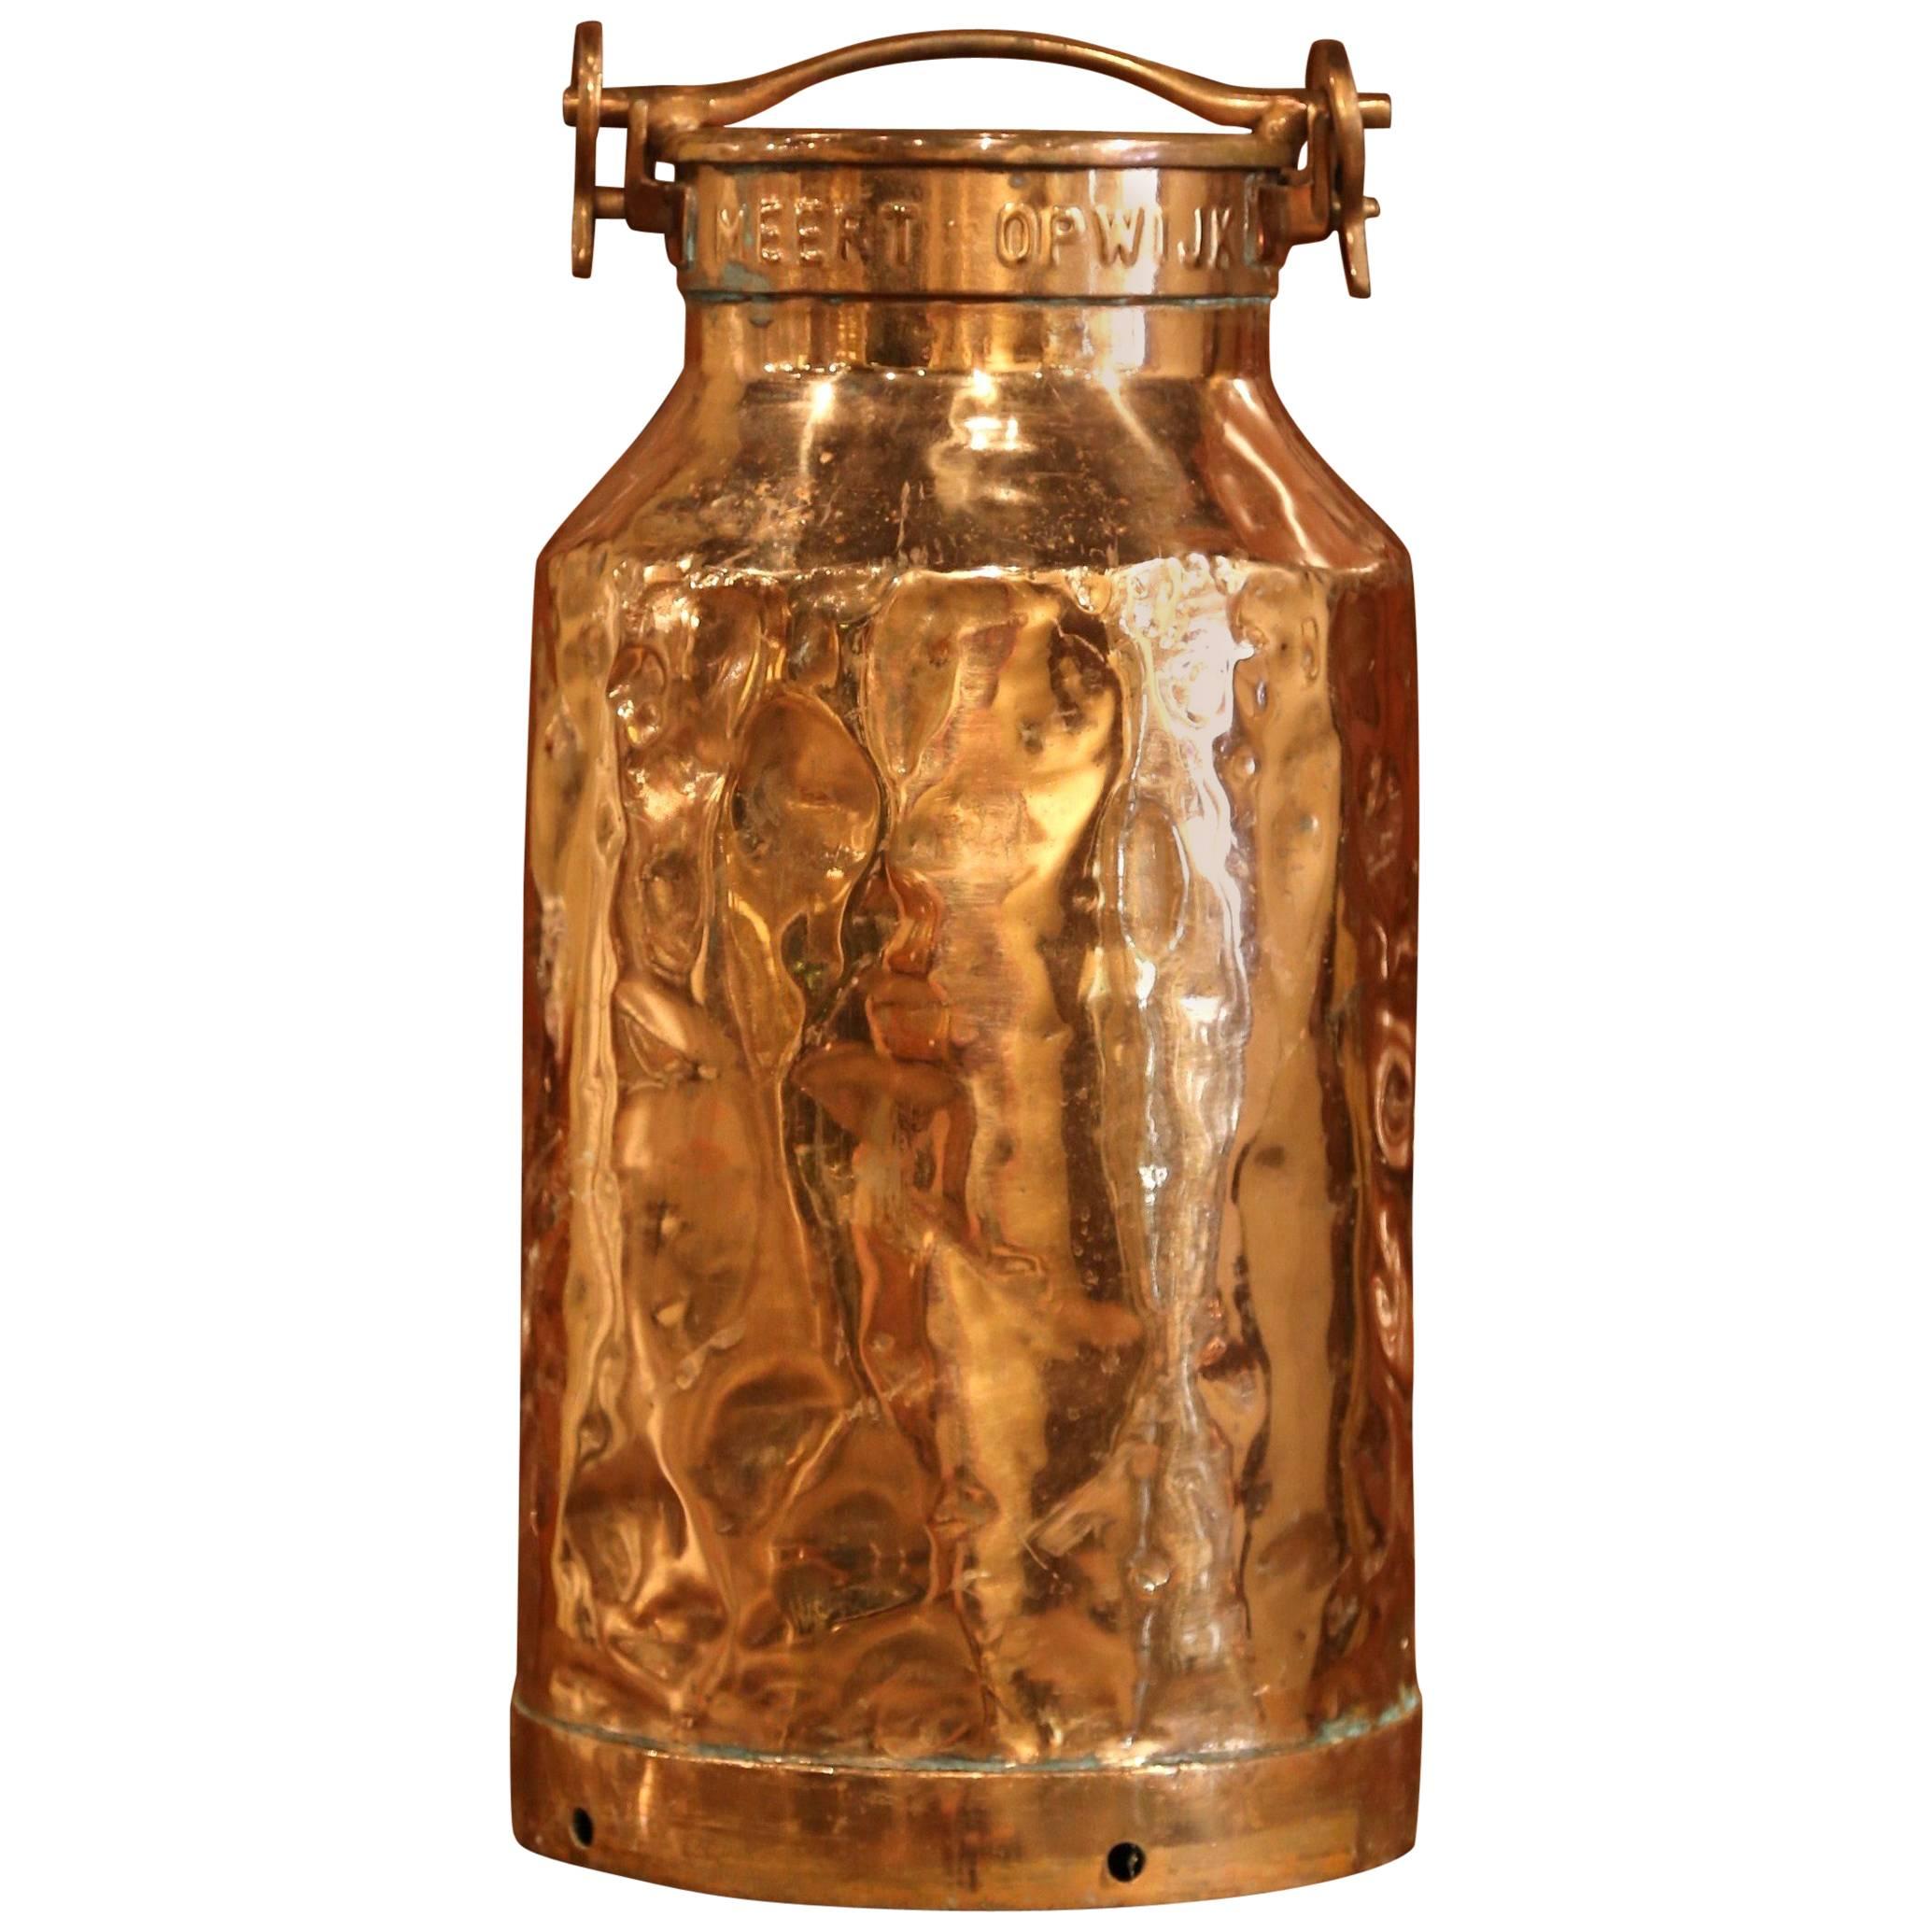 19th Century Belgium Patinated Copper Milk Container or Umbrella Stand